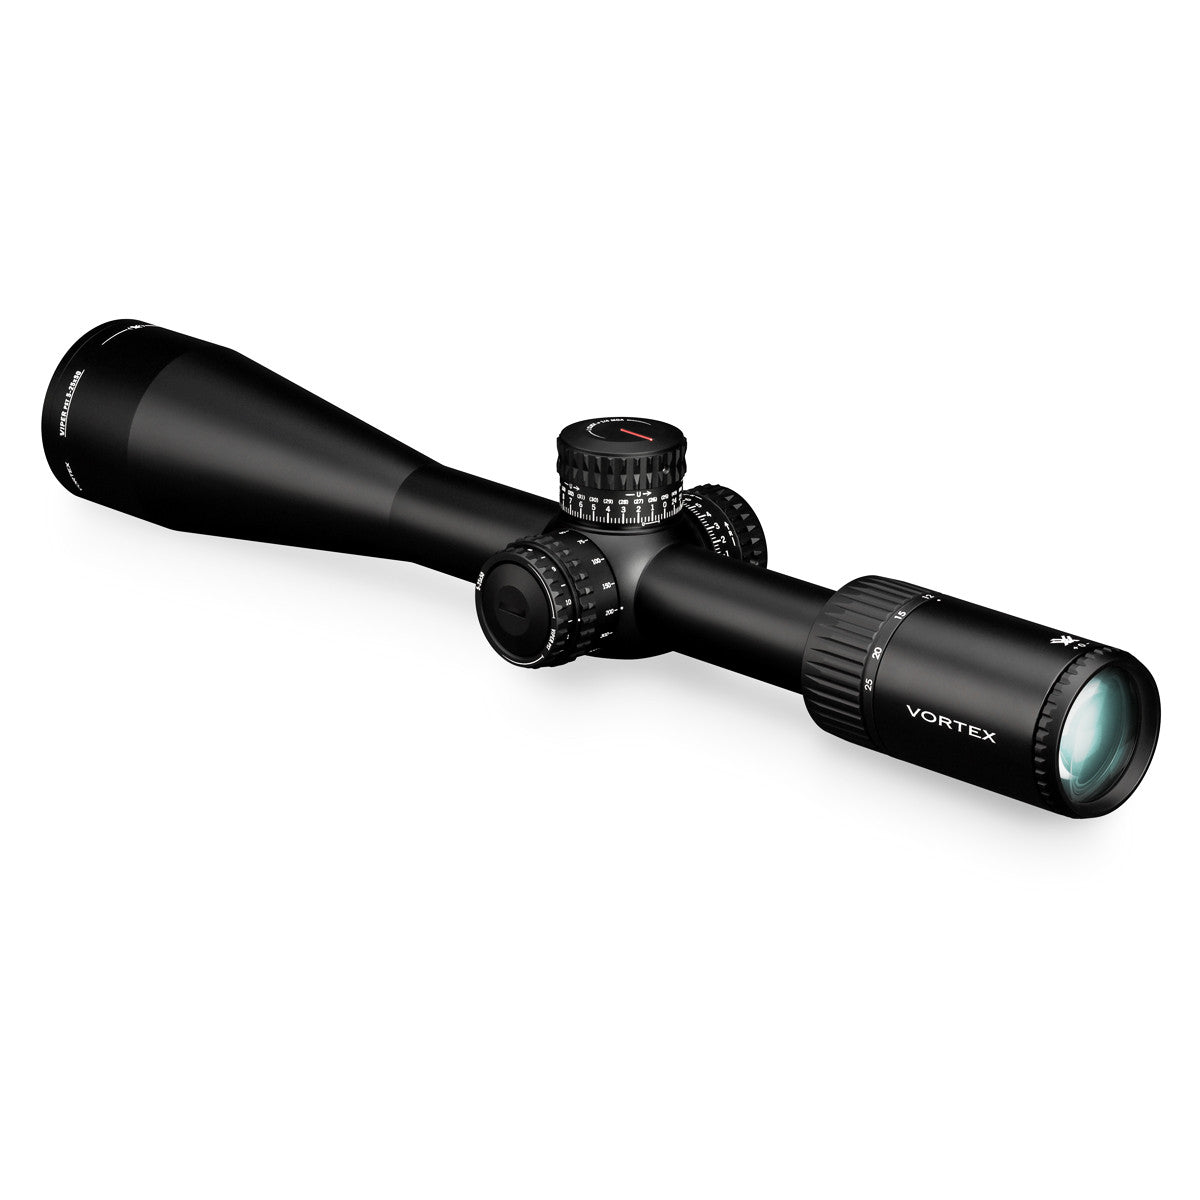 Vortex Viper PST Gen II 5-25x50 FFP Riflescope (NOT ACTIVE) - goHUNT Shop